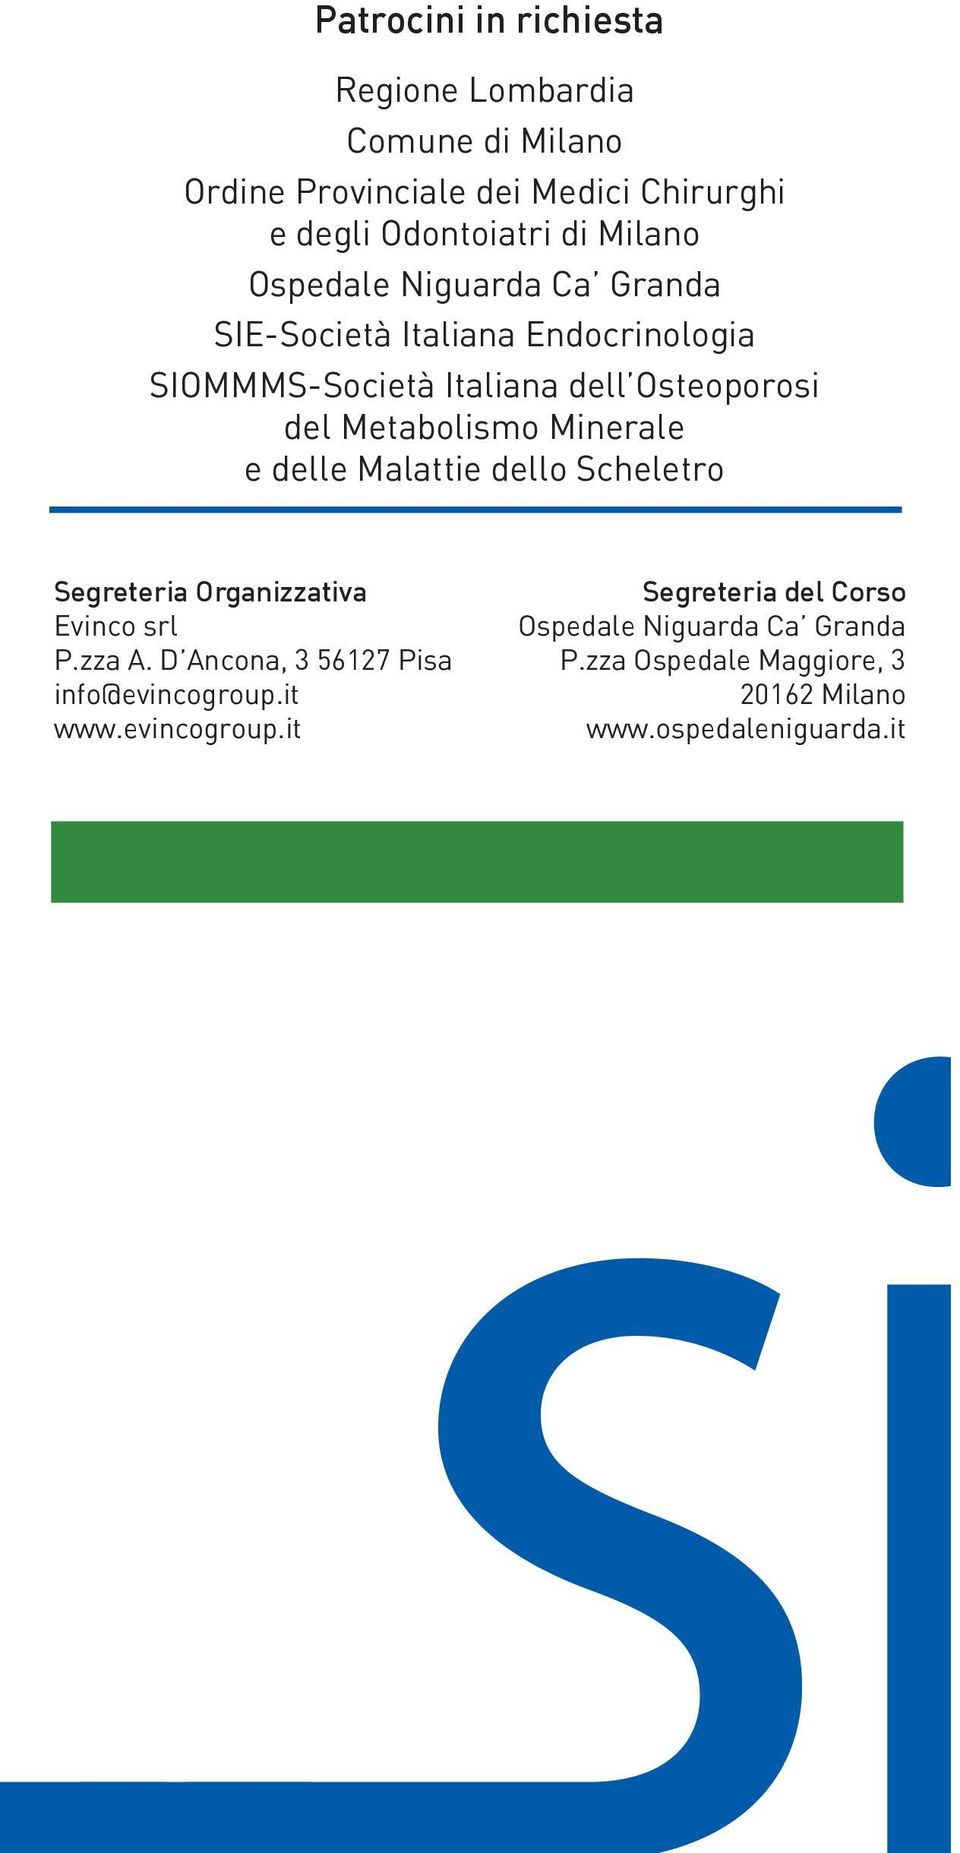 Minerale e delle Malattie dello Scheletro Segreteria Organizzativa Evinco srl P.zza A. D Ancona, 3 56127 Pisa info@evincogroup.